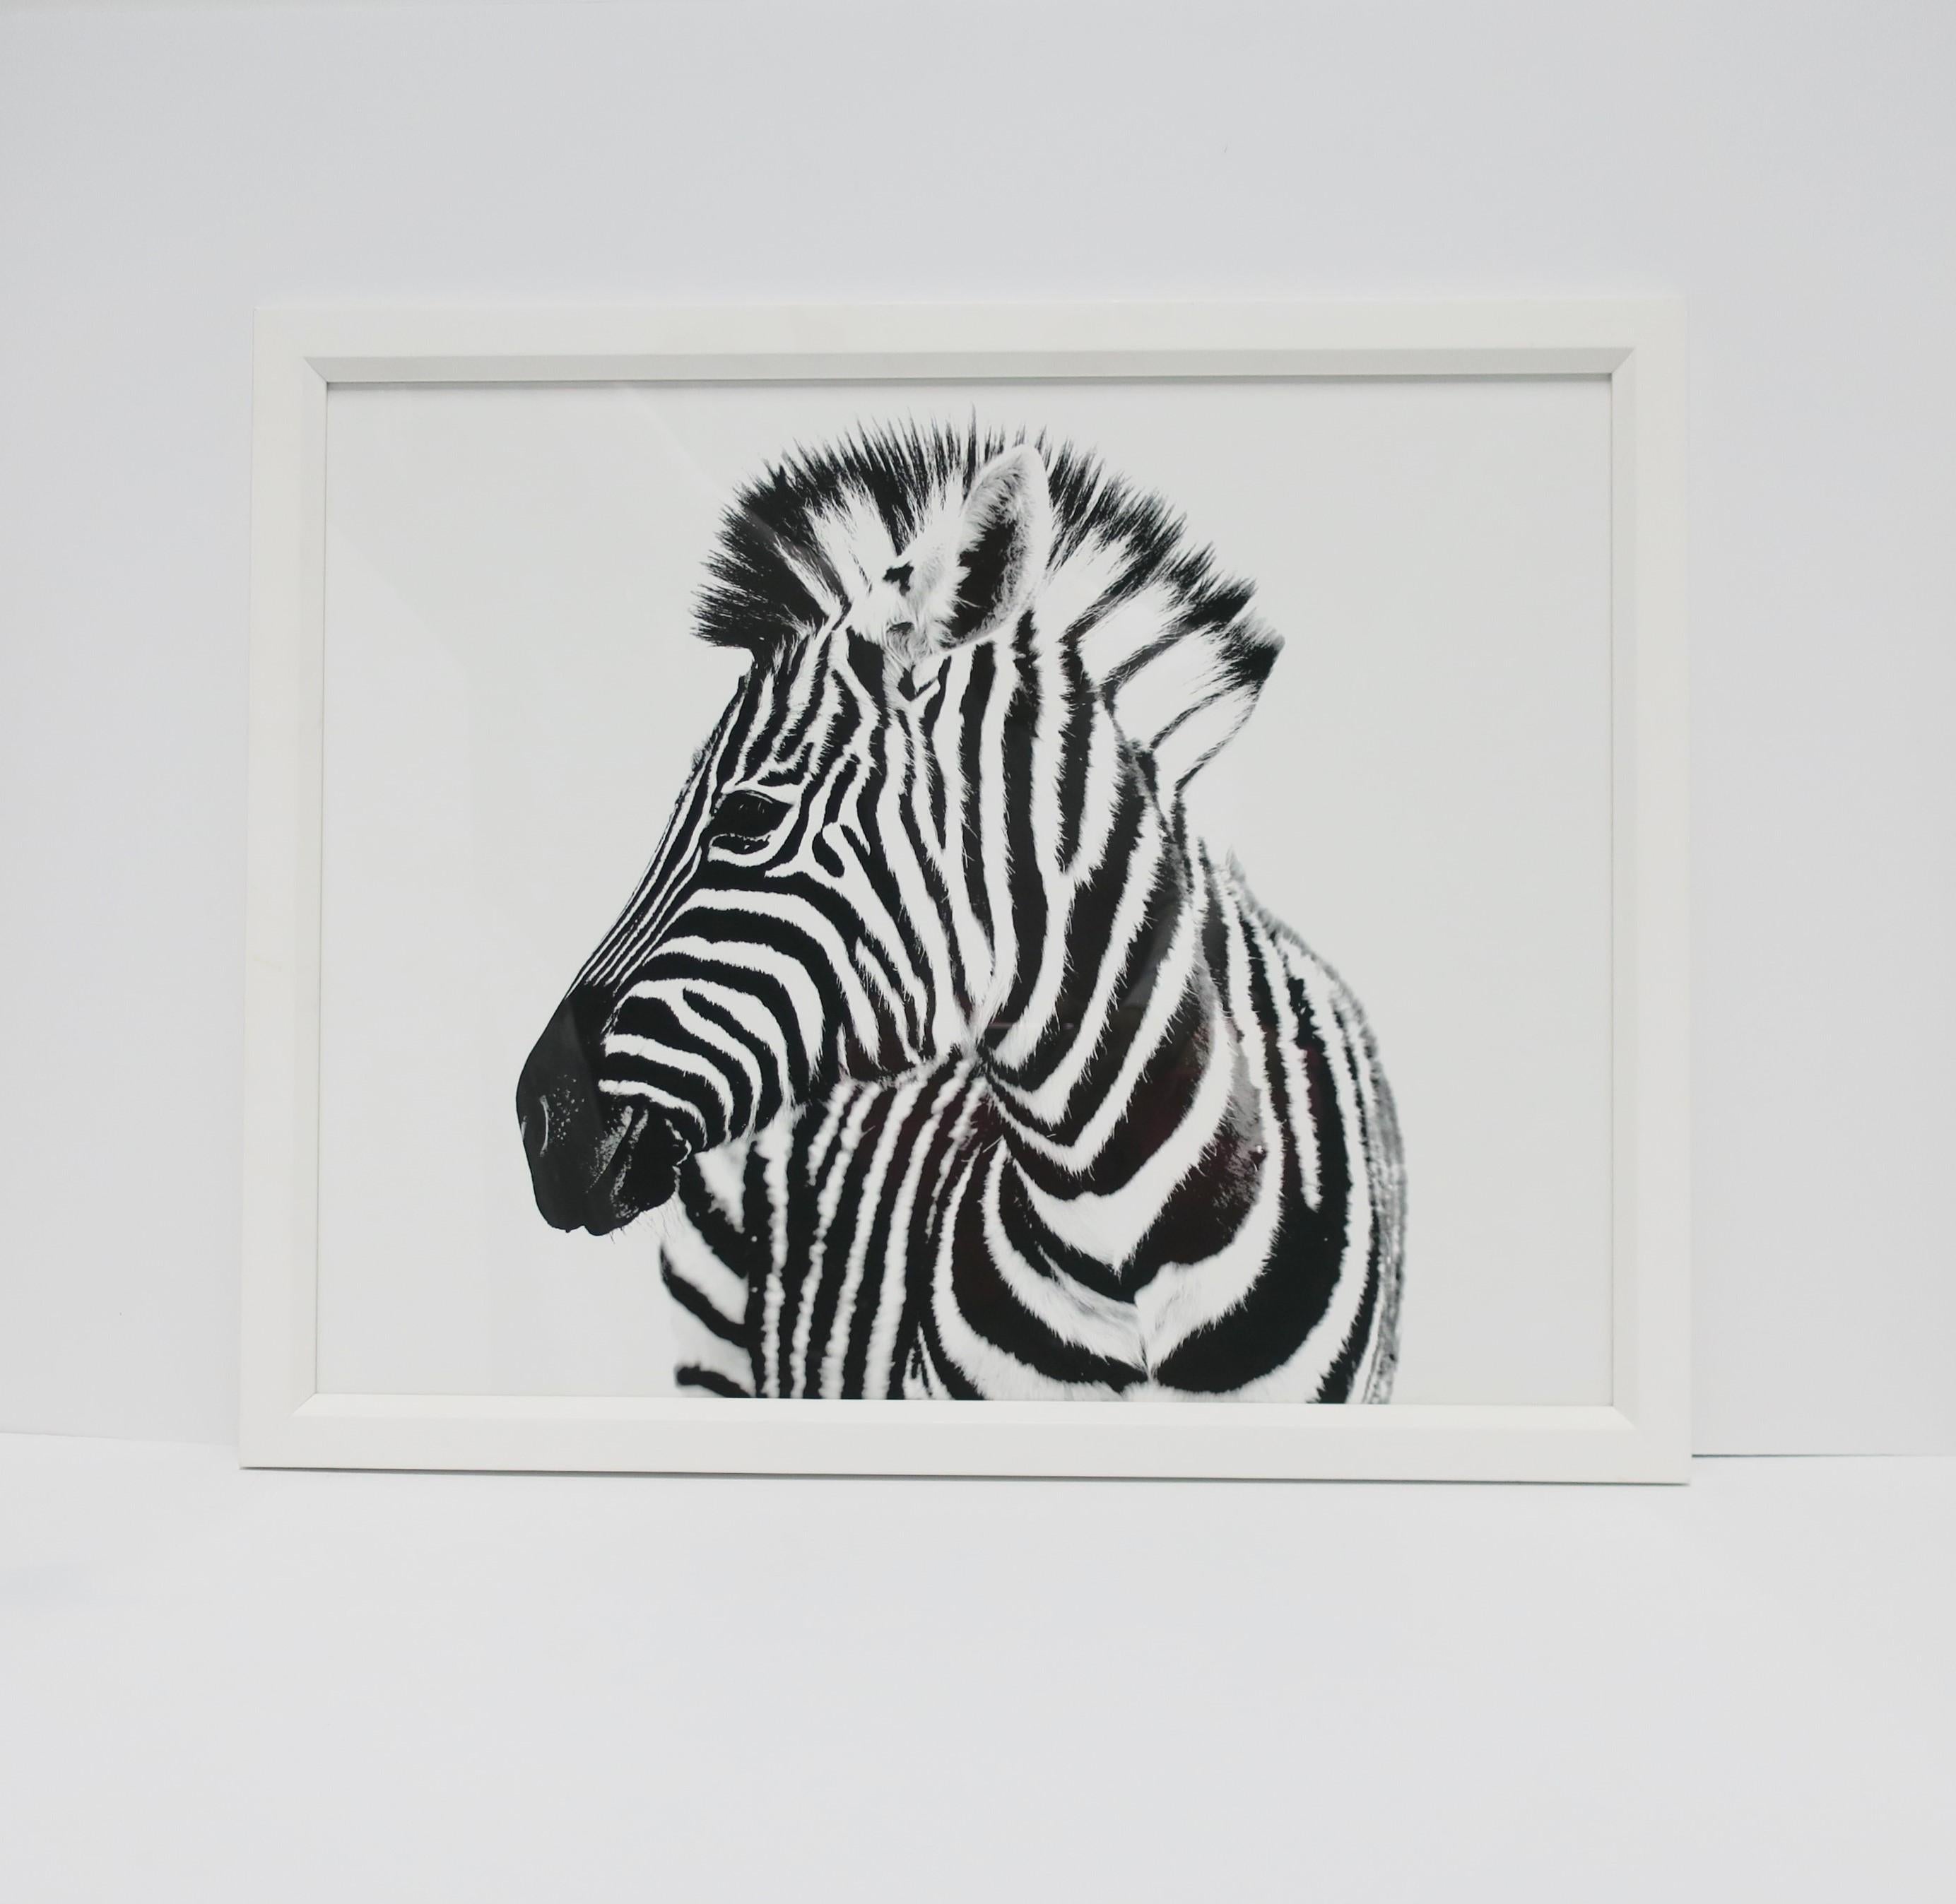 Schwarz-weißer Zebra-Fotodruck mit weißem, handgefertigtem Rahmen, aus der Londoner Galerie William Stafford, ca. 21. Jahrhundert, England. Die in London ansässige Galerie bietet Reproduktionsdrucke der schönen Künste, zeitgenössische